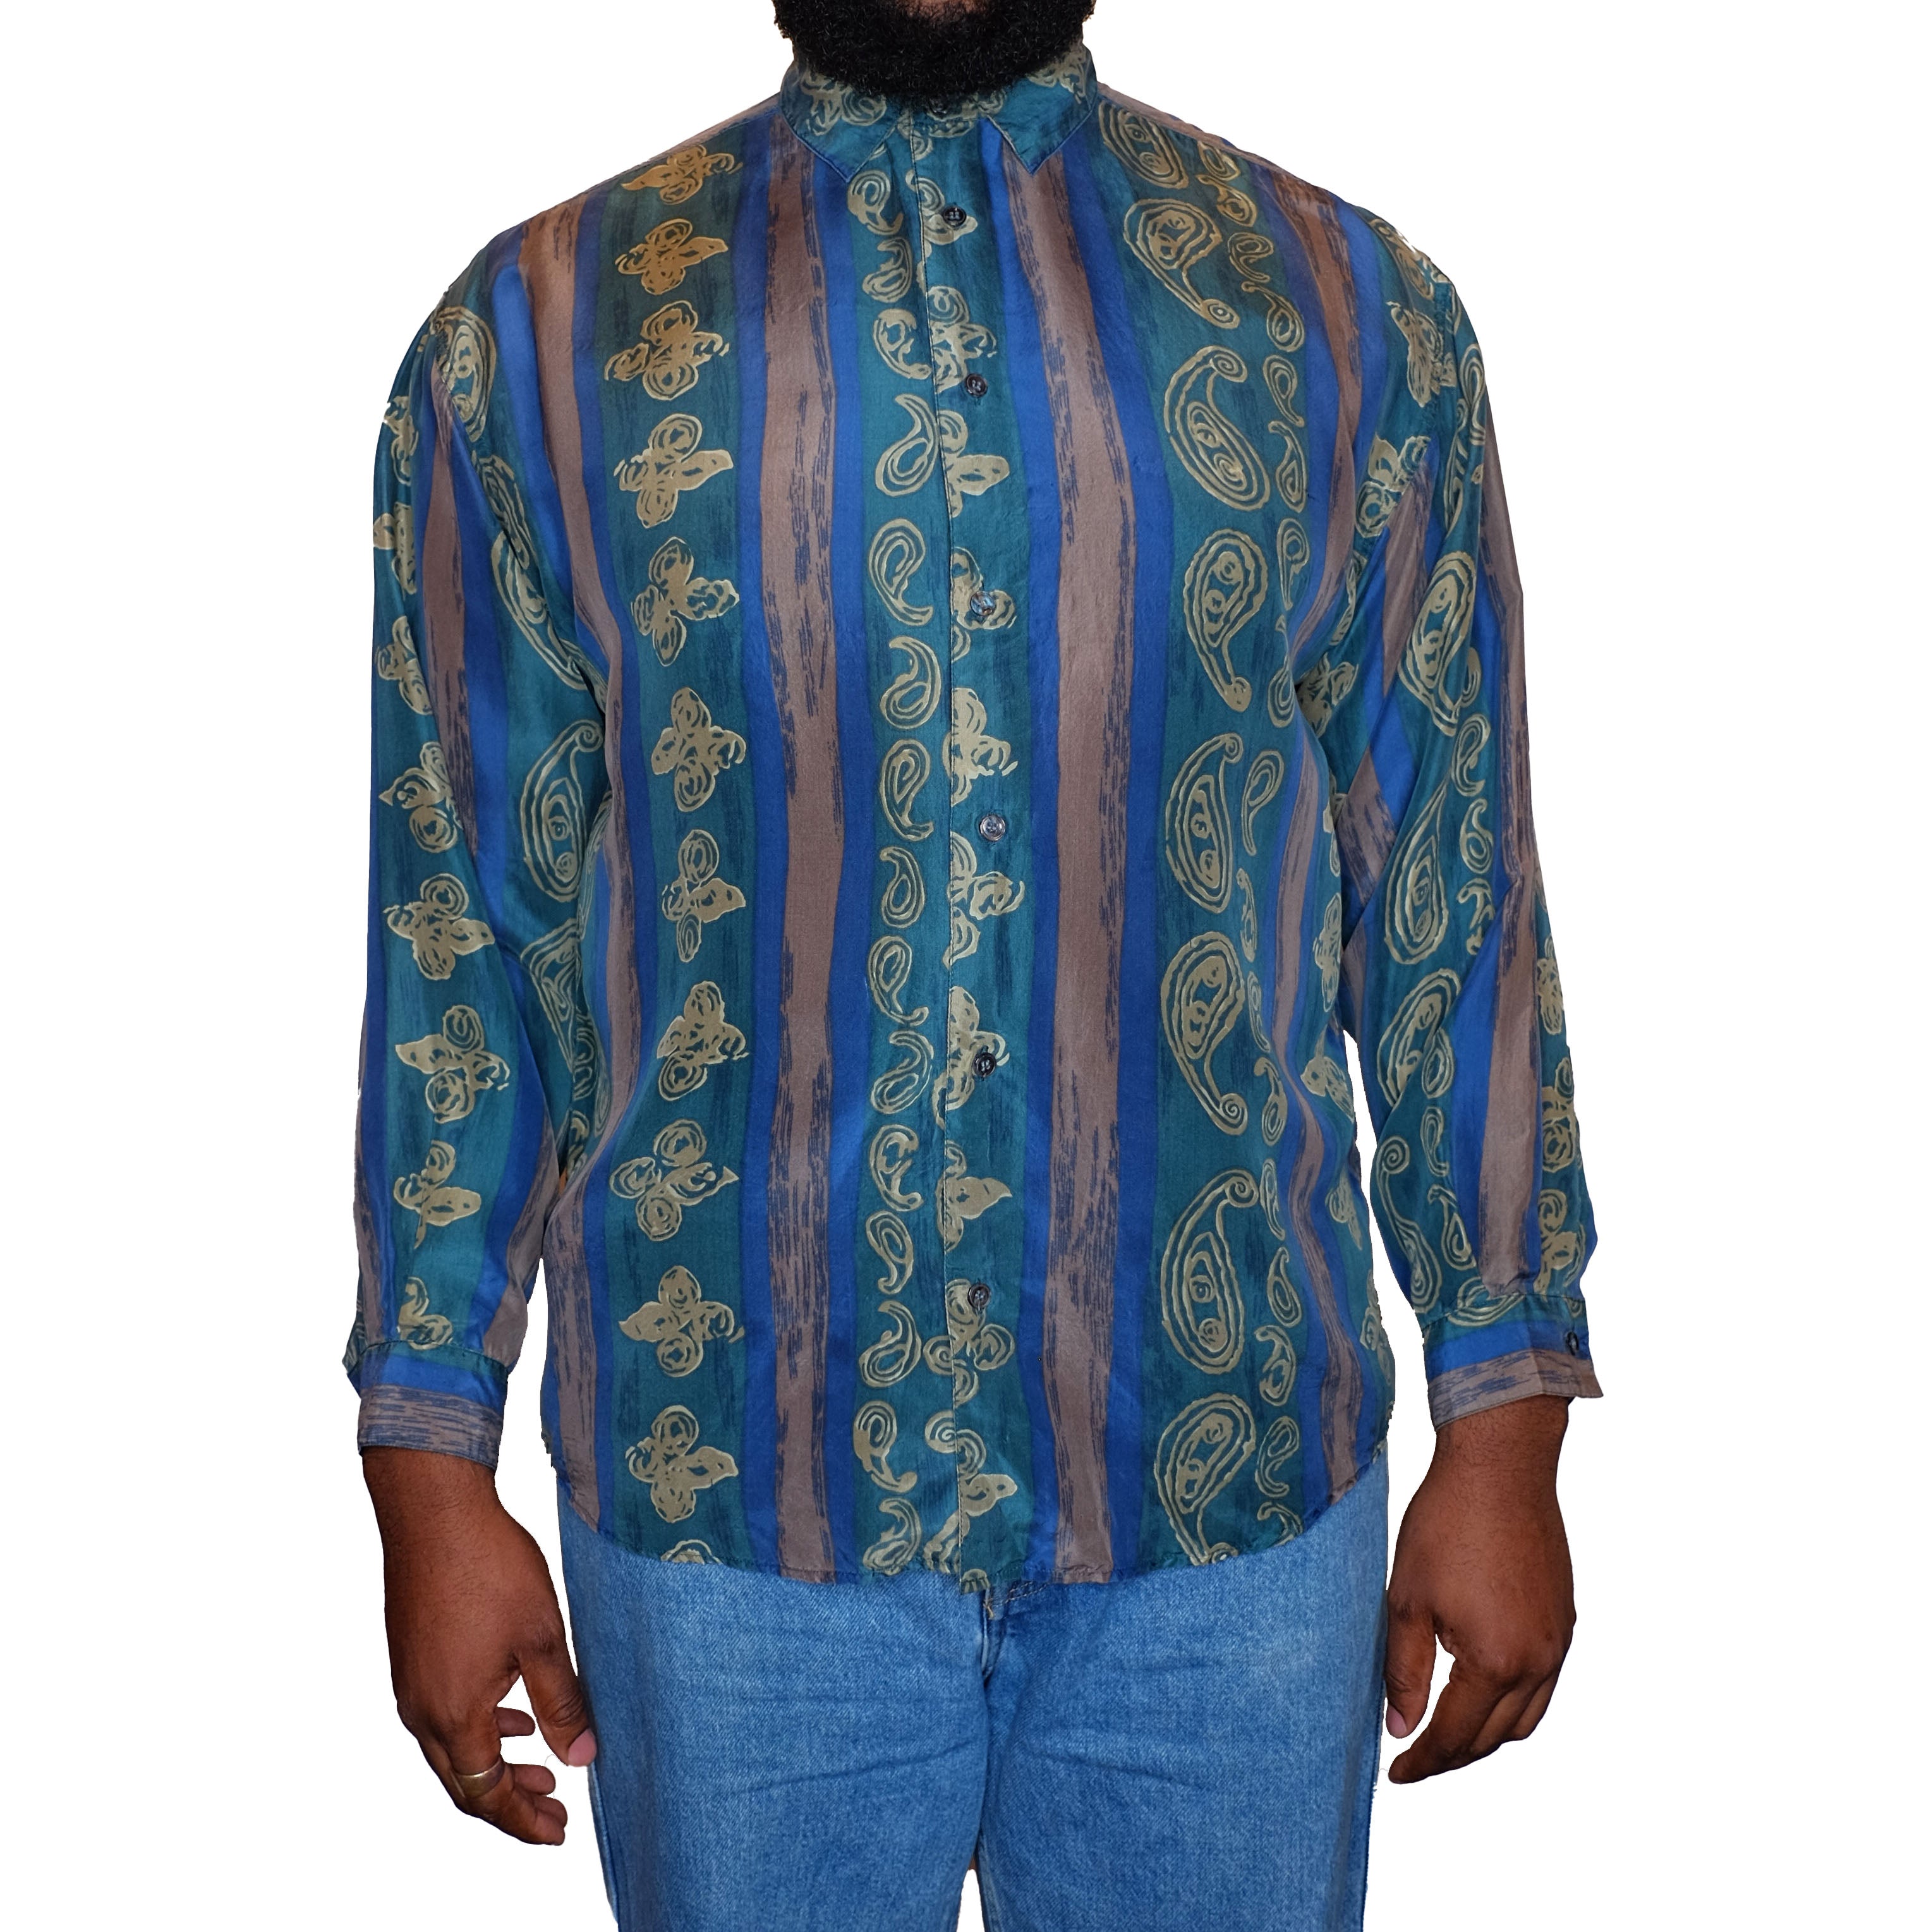 Blue/Green Silk Shirt (High Advantage)